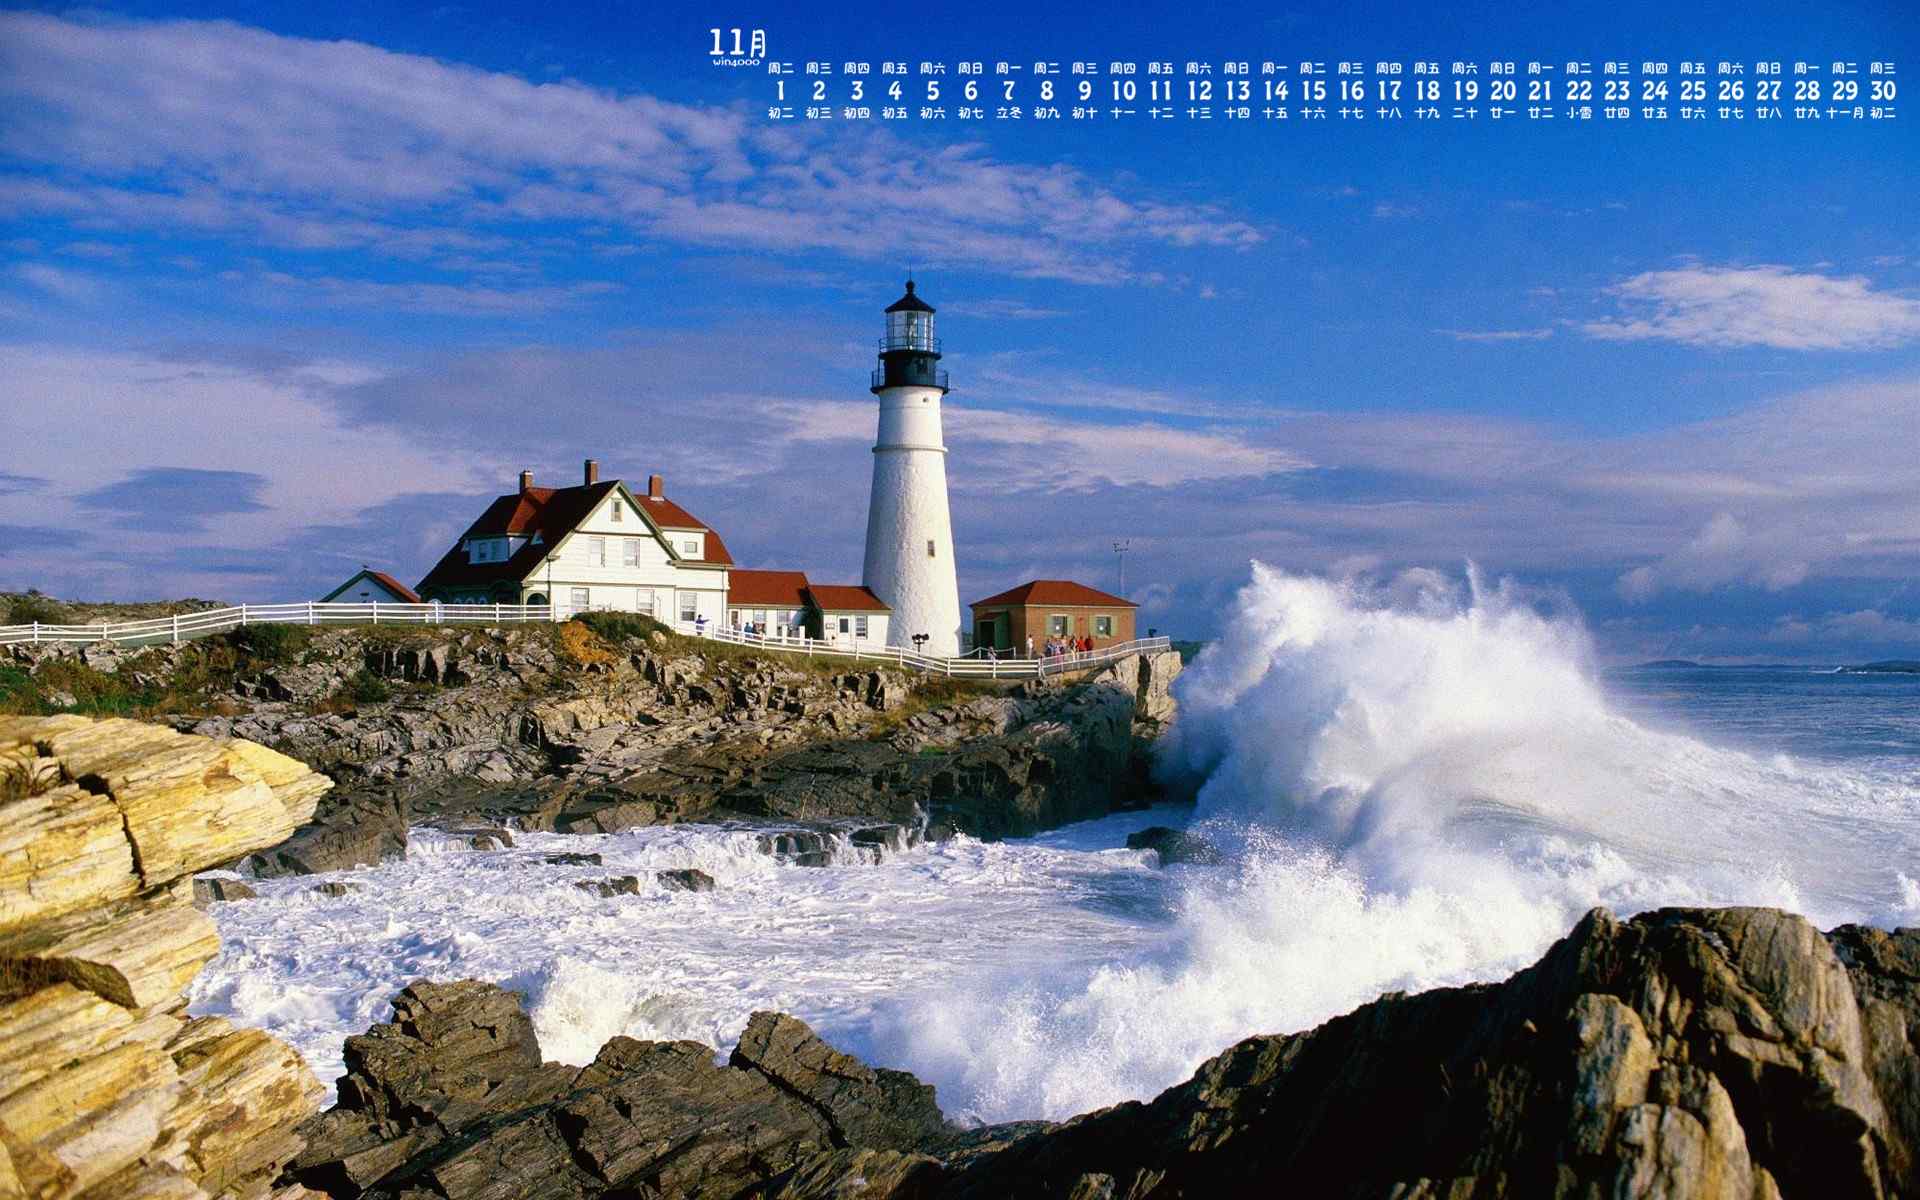 2016年11月日历海边灯塔高清摄影图片桌面壁纸